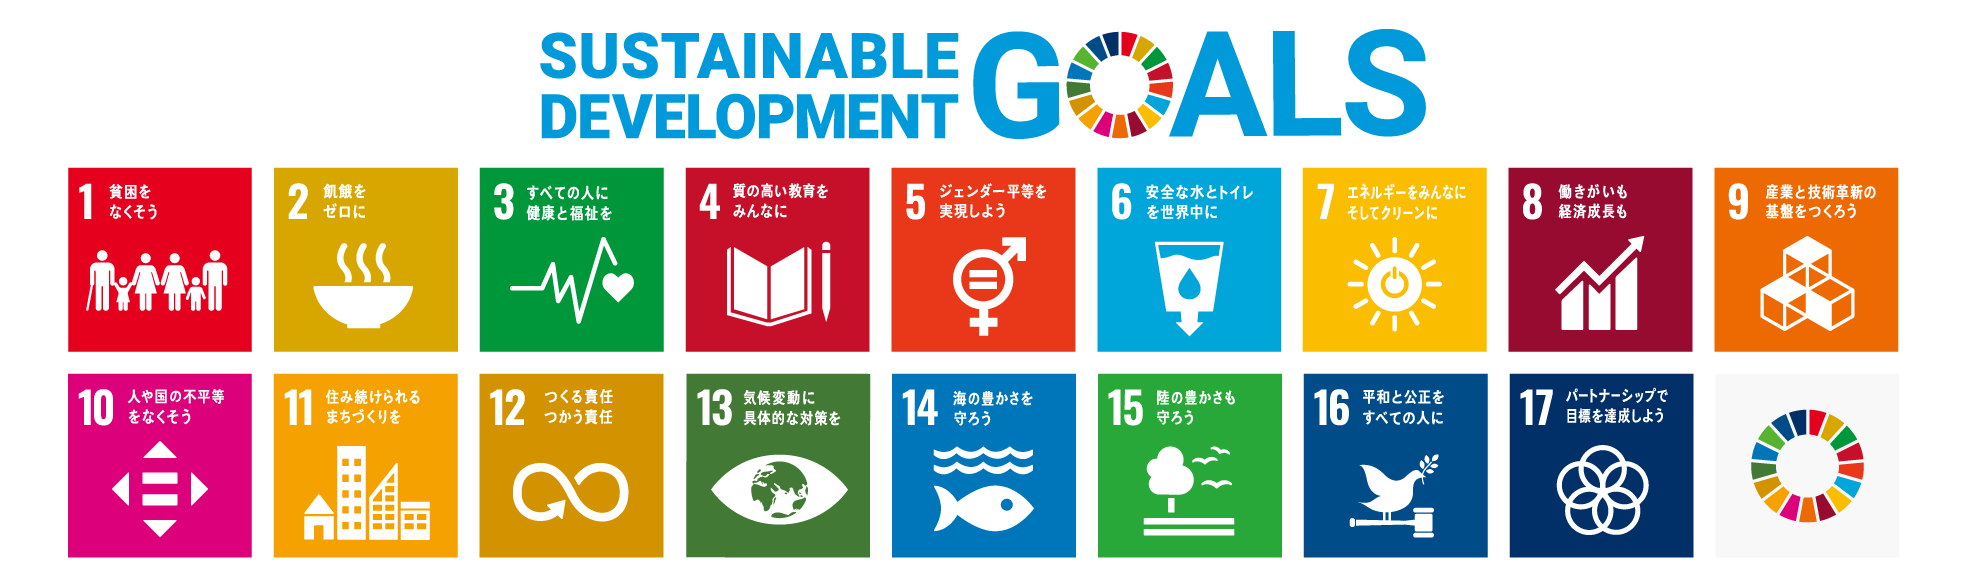 SDGs 持続可能な社会を目指して 17の目標